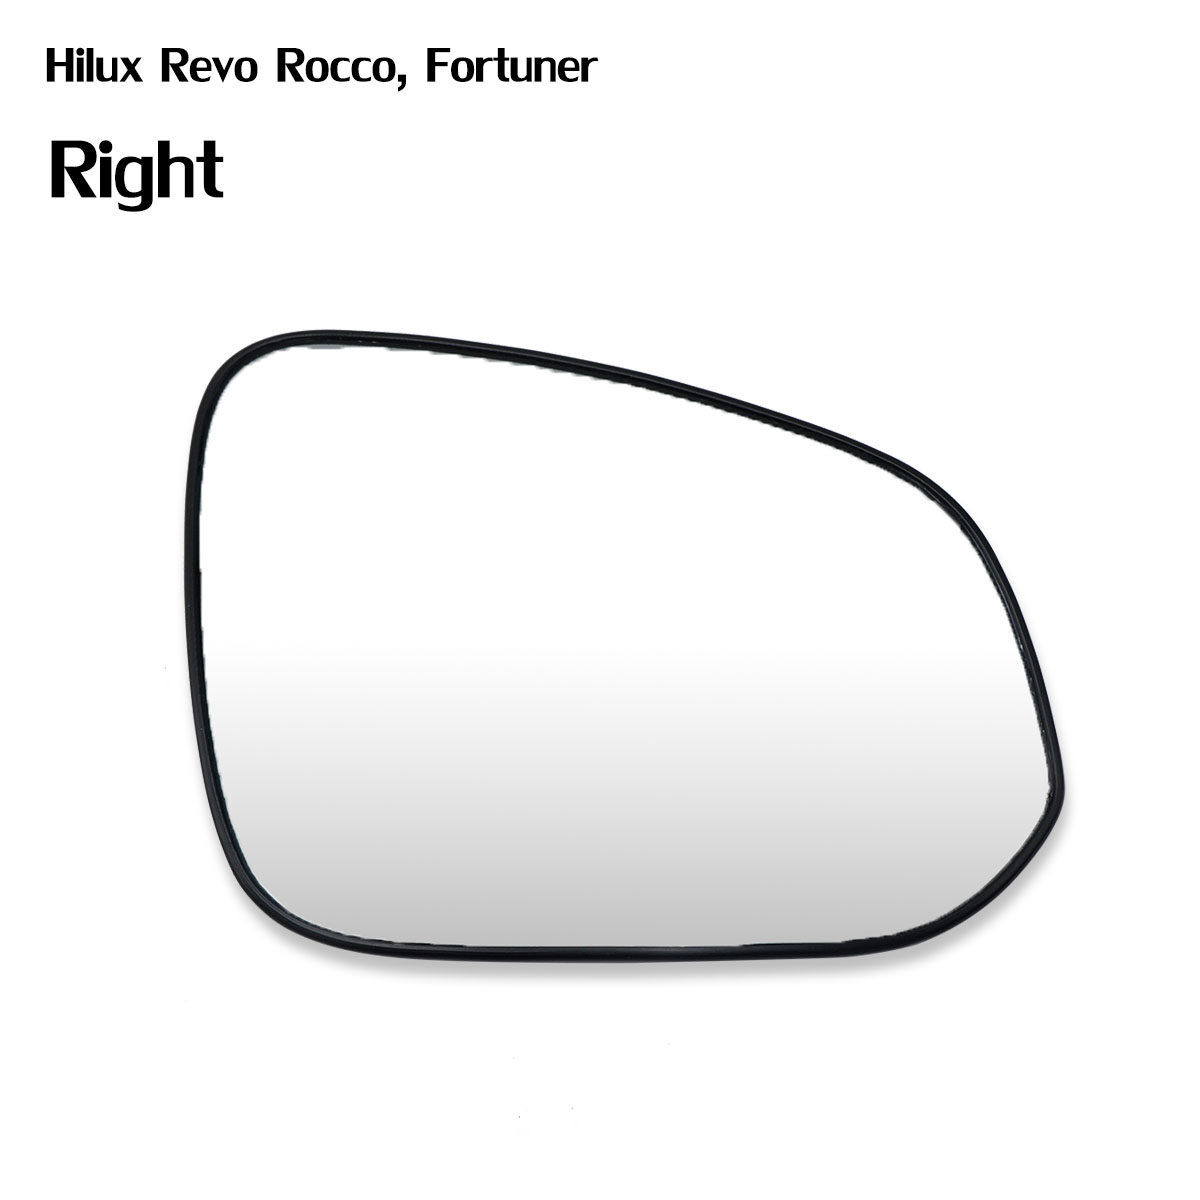 เนื้อเลนส์กระจก ข้าง ขวา ใส่ Toyota Hilux REVO SR5 Fortuner 2015 - 2019 Right Wing Side Door Mirror Glass Len Hilux Vigo Rocco SR5, Fortuner 4x2 4x4 2015-2019 Toyotaมีบริการเก็บเงินปลายทาง